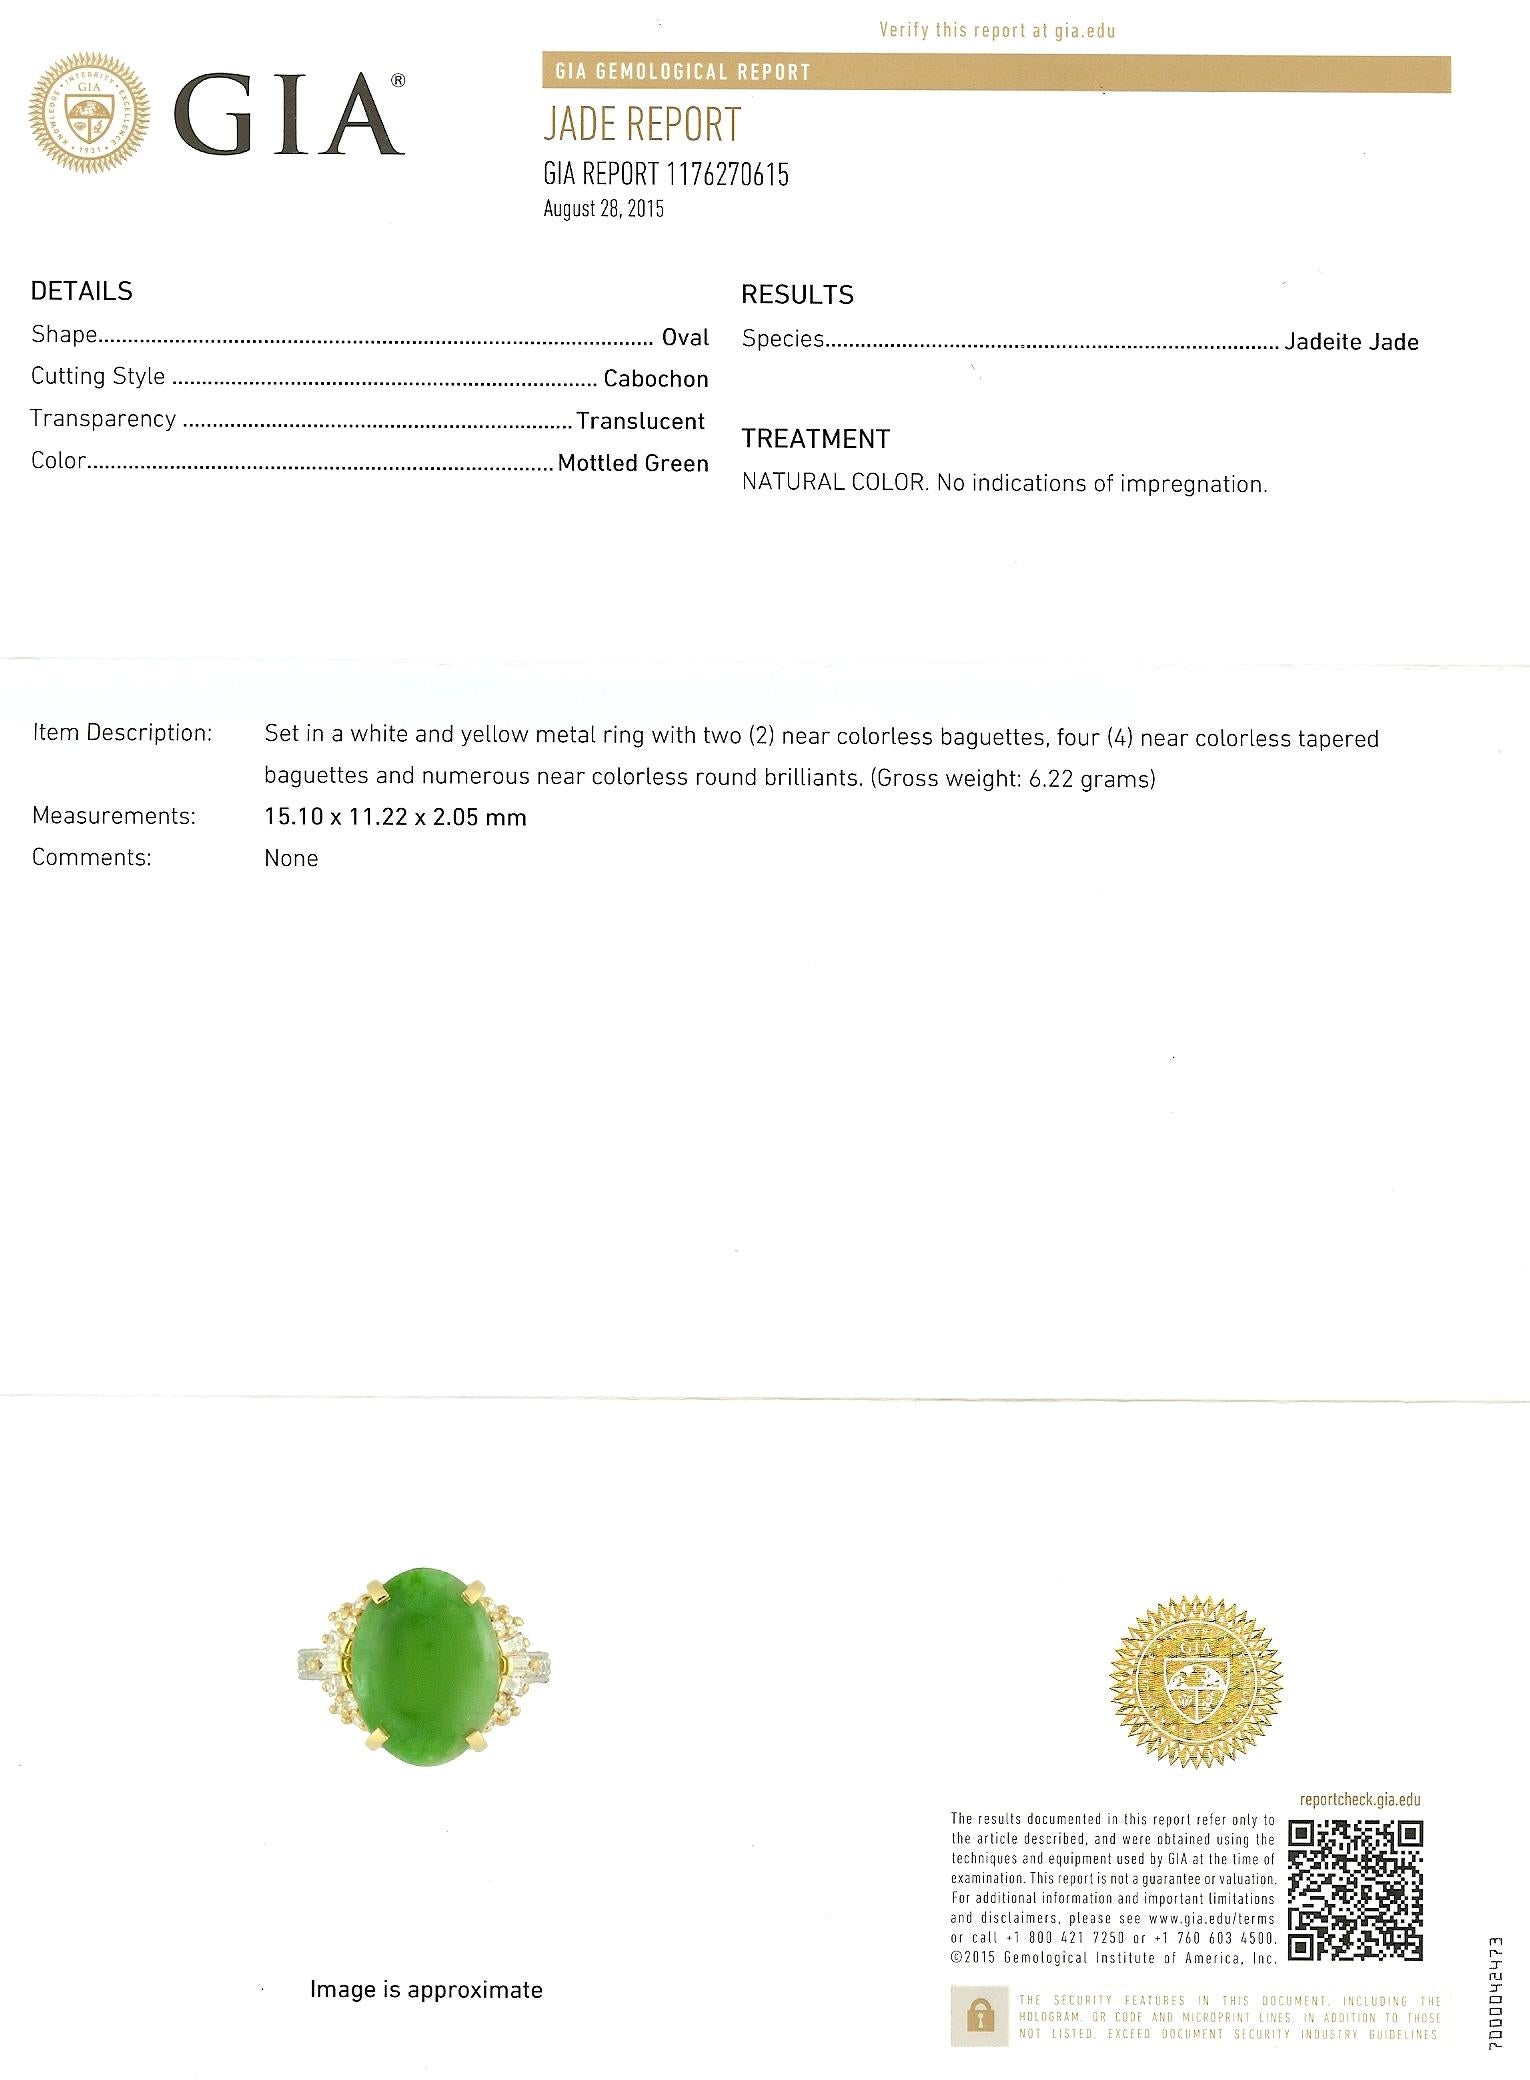 Cette bague en or 18 carats est composée d'une pièce centrale ovale de jade naturel certifié GIA, solidement sertie dans une monture en or jaune à 4 branches. Bien que légèrement panaché, il possède la nuance de vert la plus recherchée. Sans